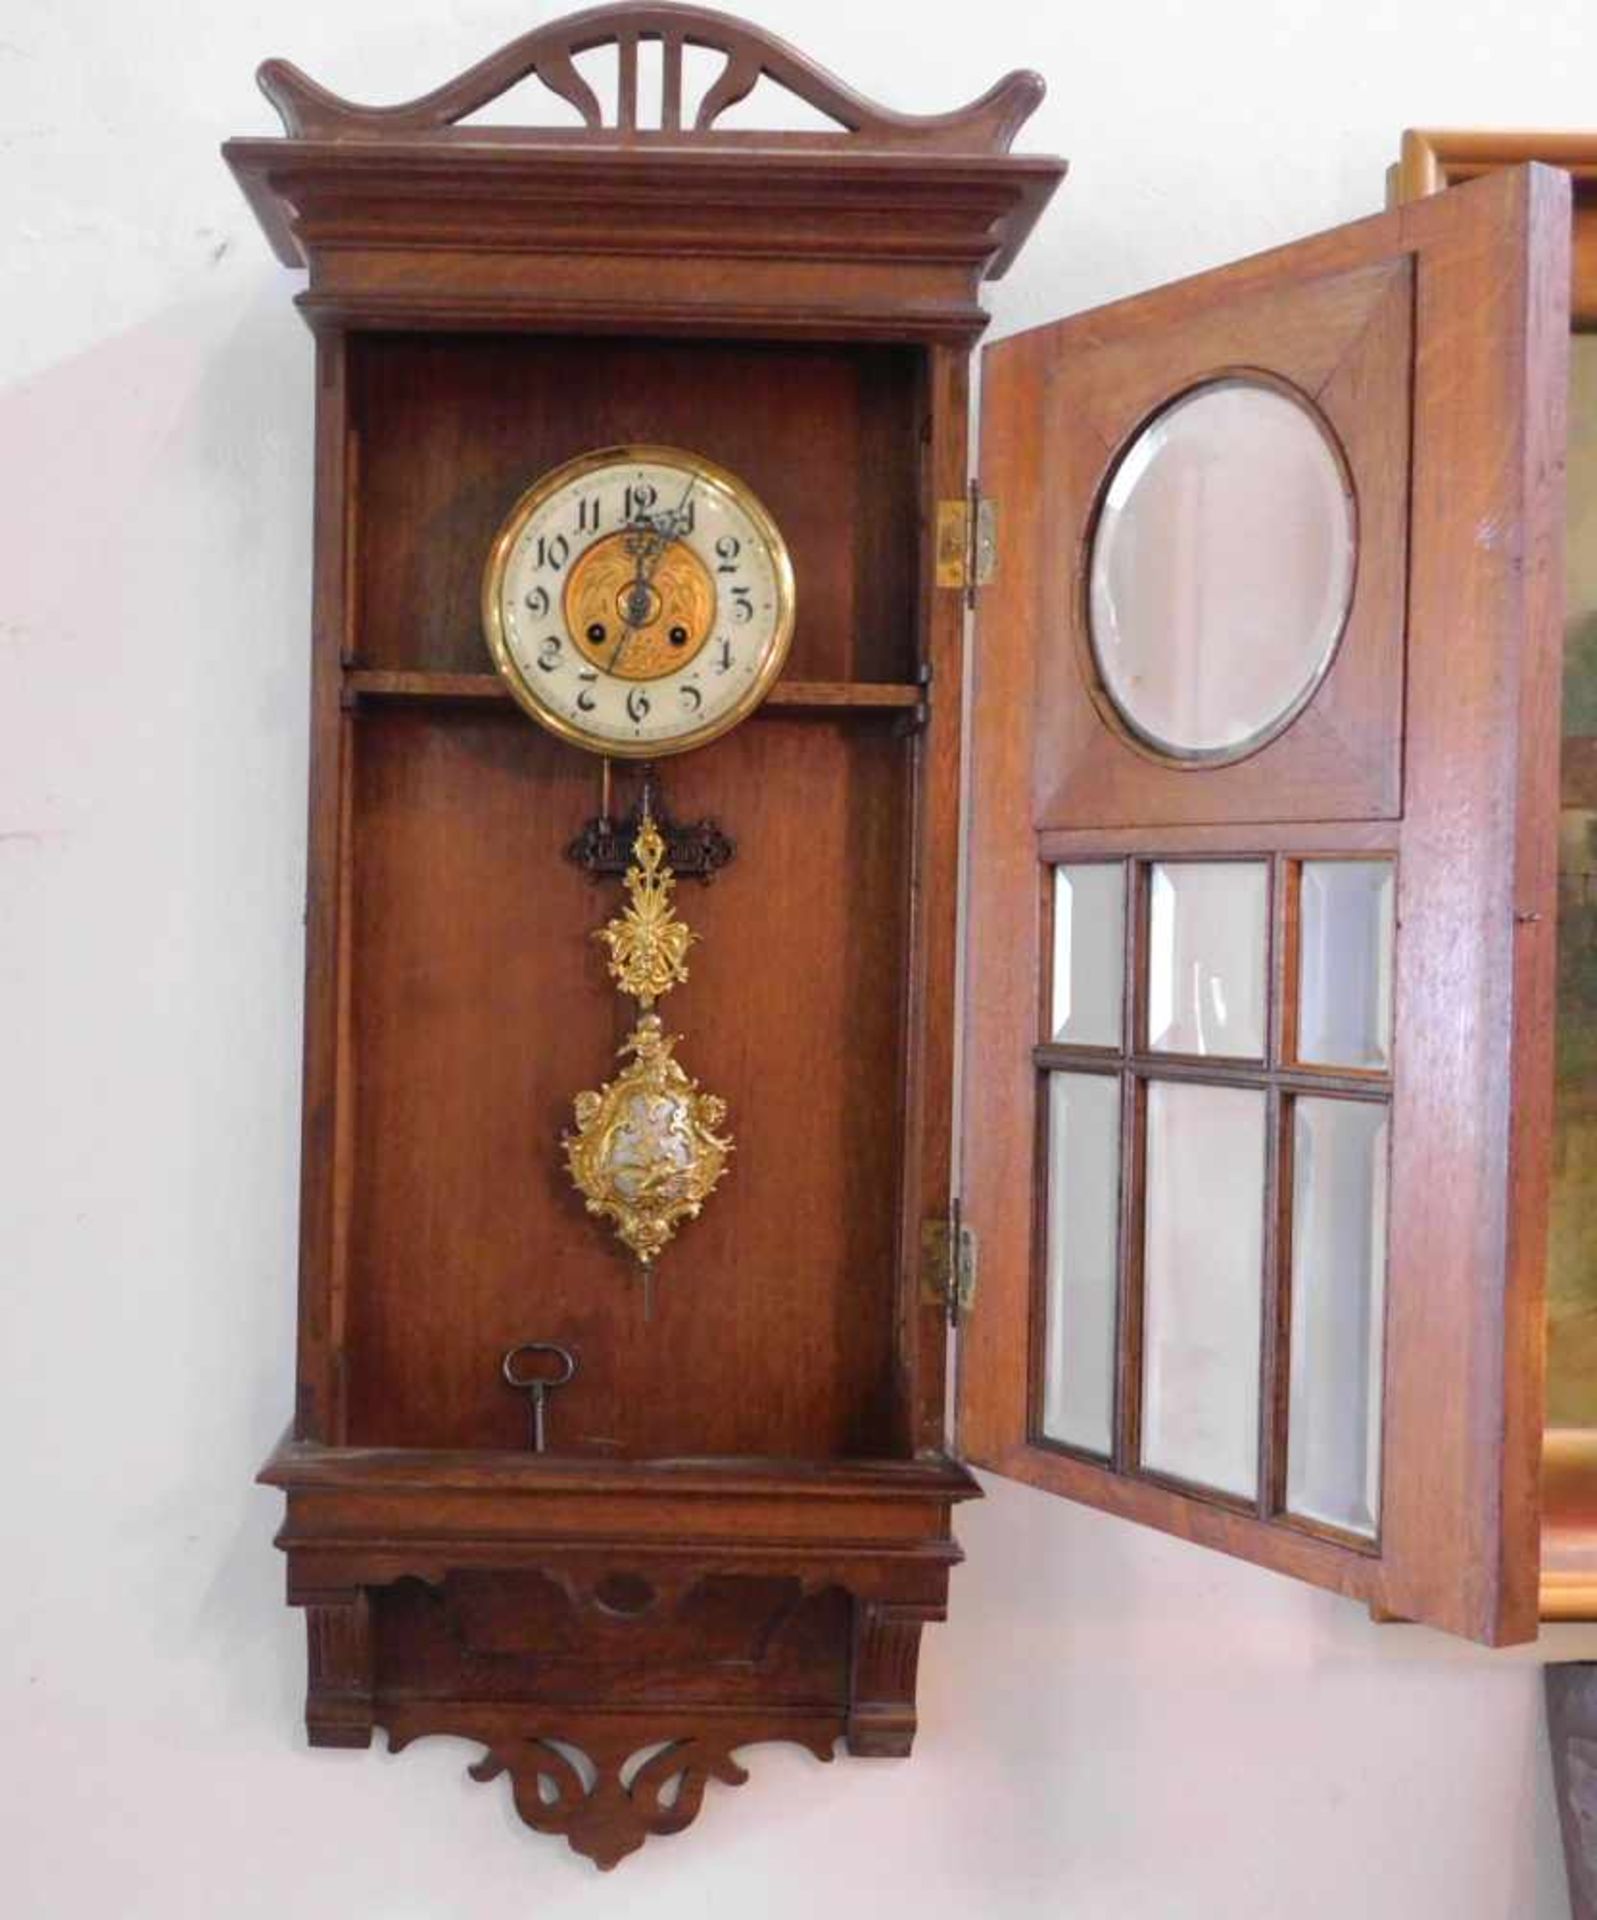 Großer Regulator, Eiche, Jugendstil um 1900, Glockengong, Uhrwerk punziert B.P. Patent und - Bild 2 aus 7